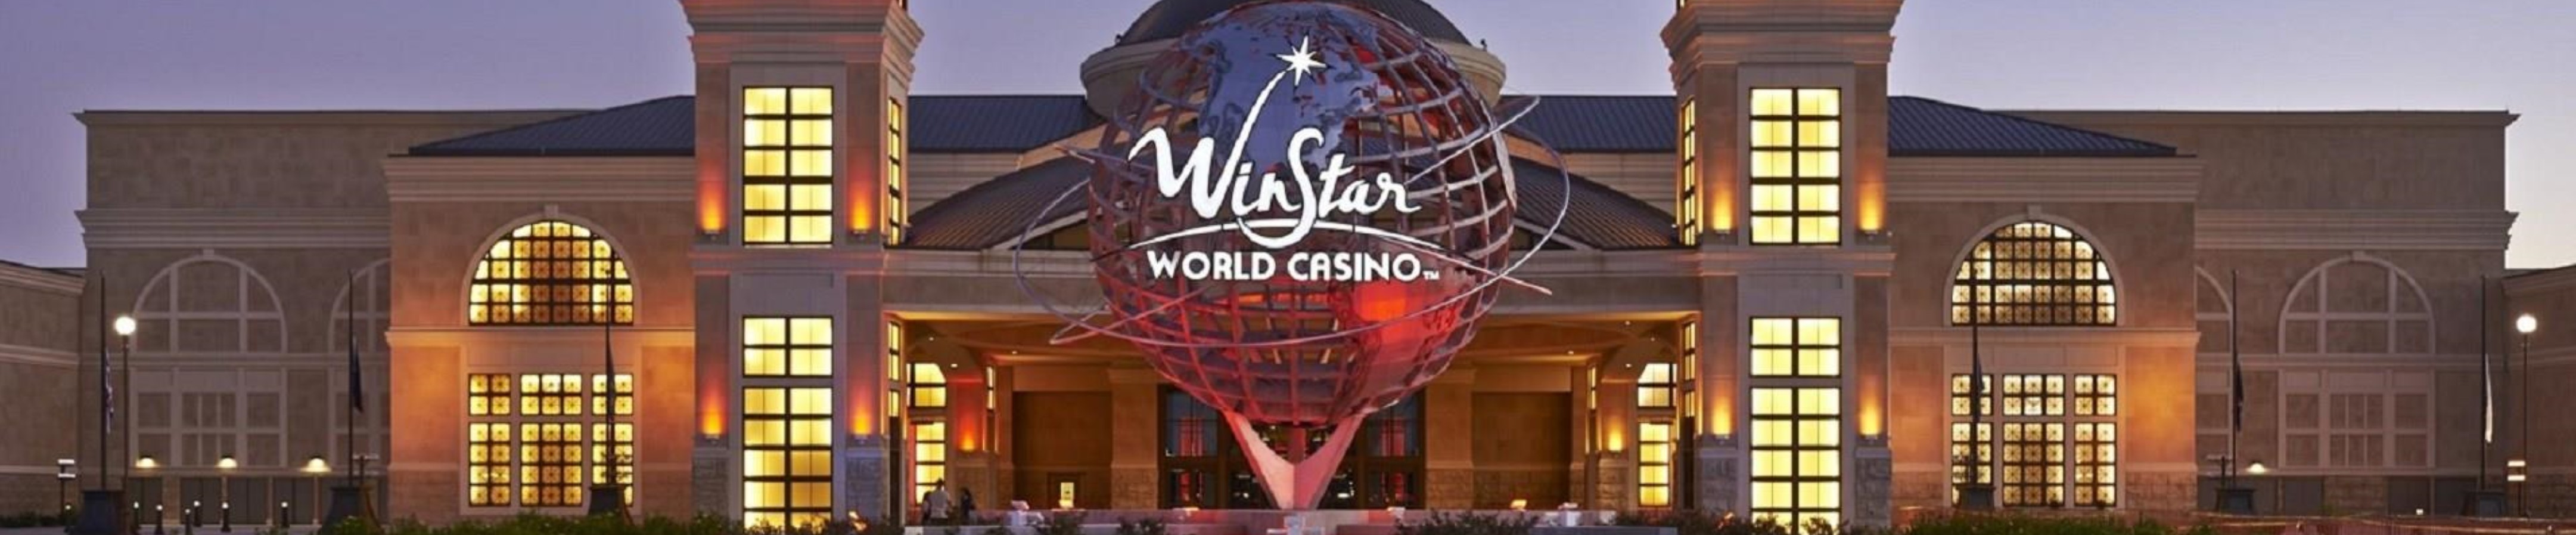 Winstar casino oklahoma phone number in oklahoma city